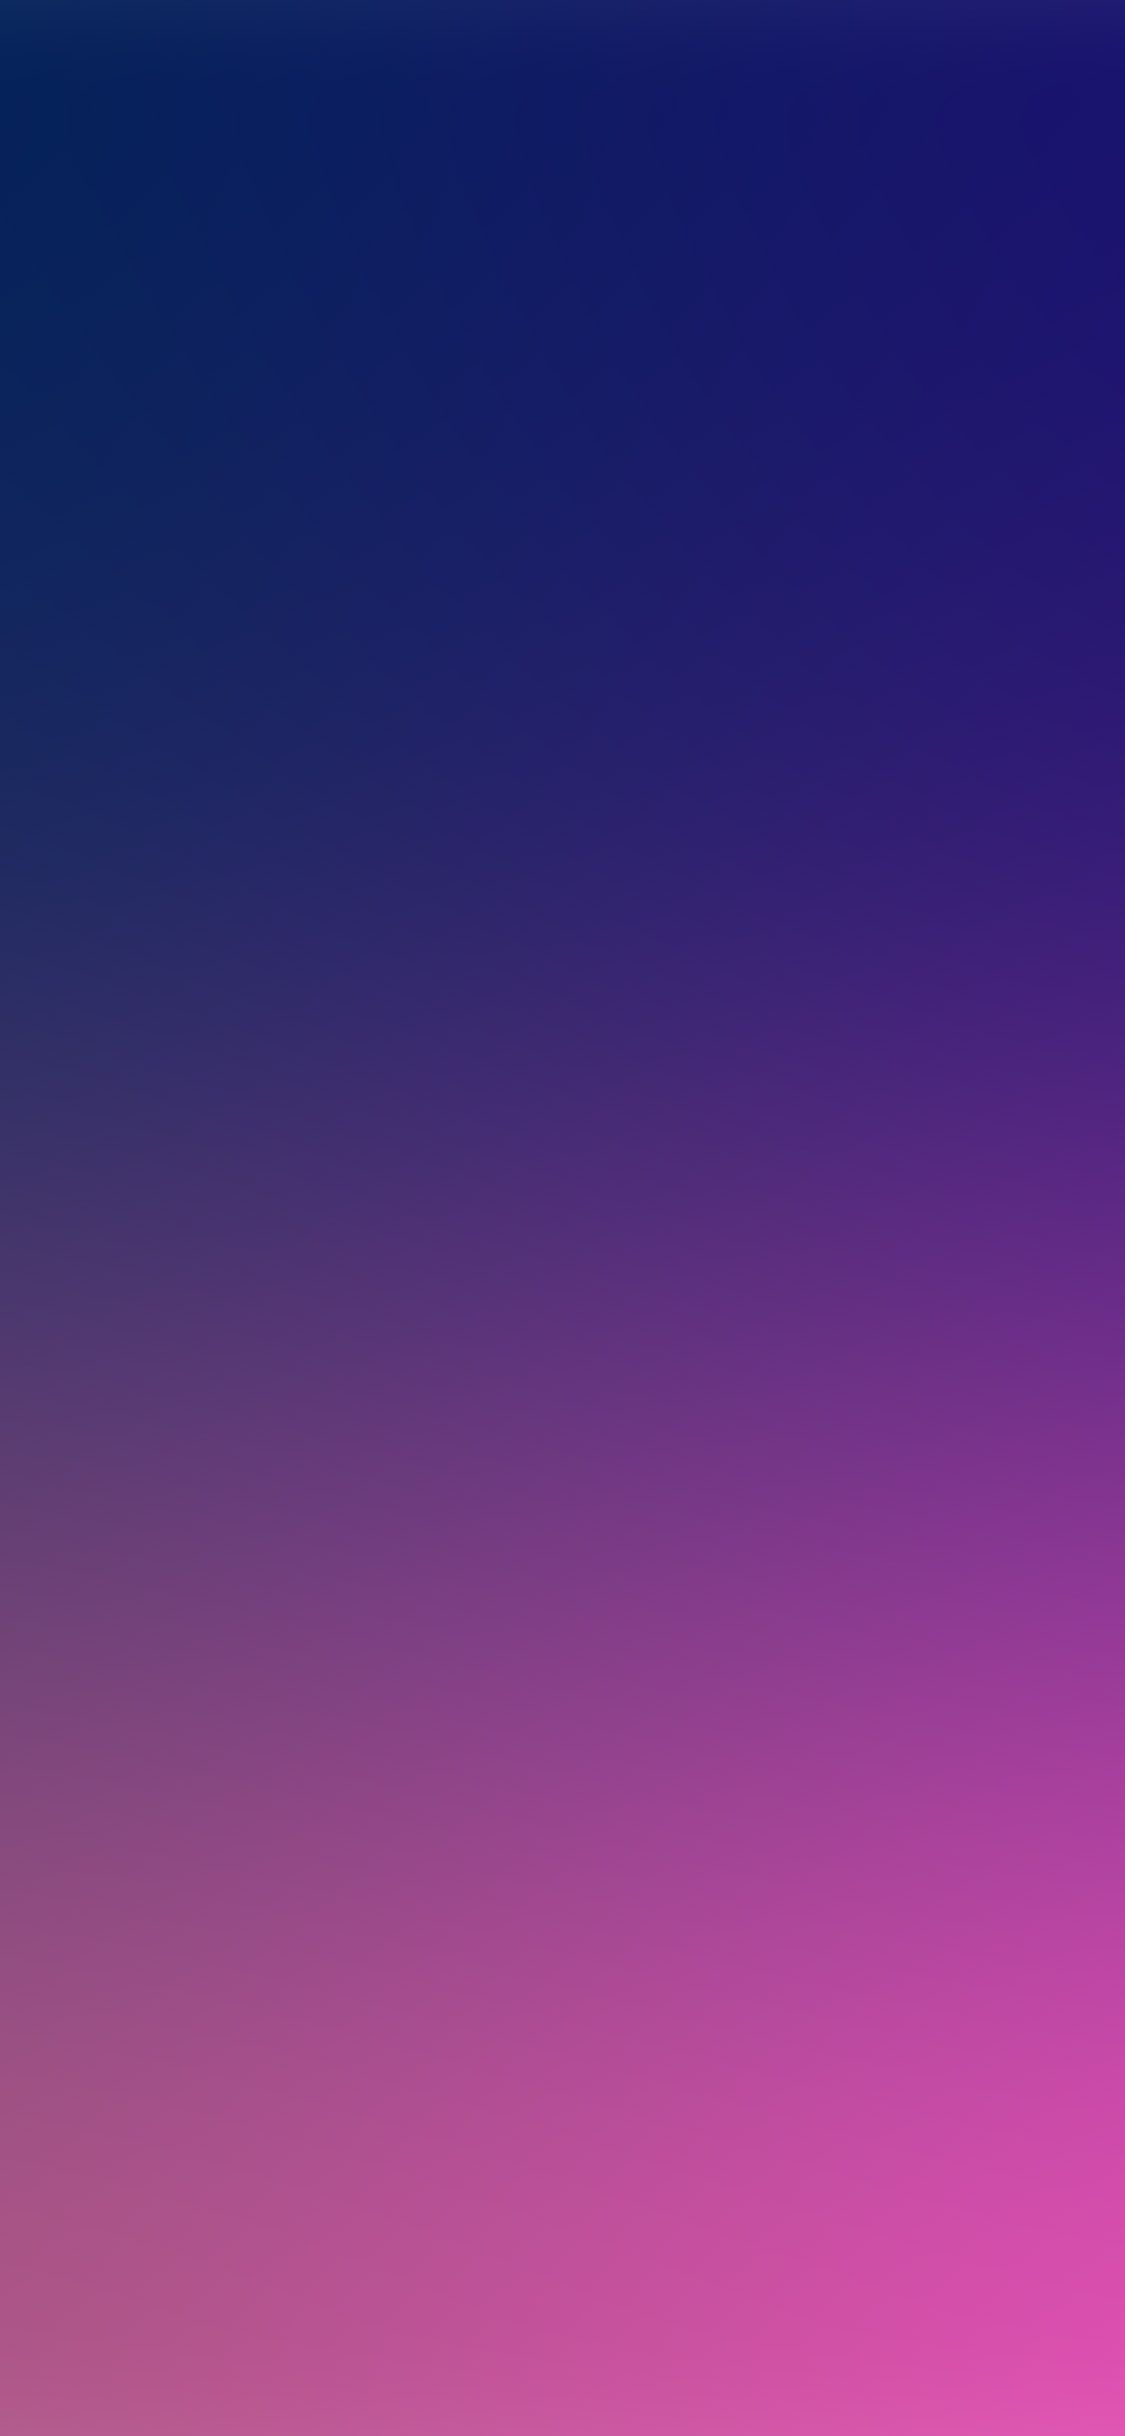 iPhone X wallpaper. blue purple color